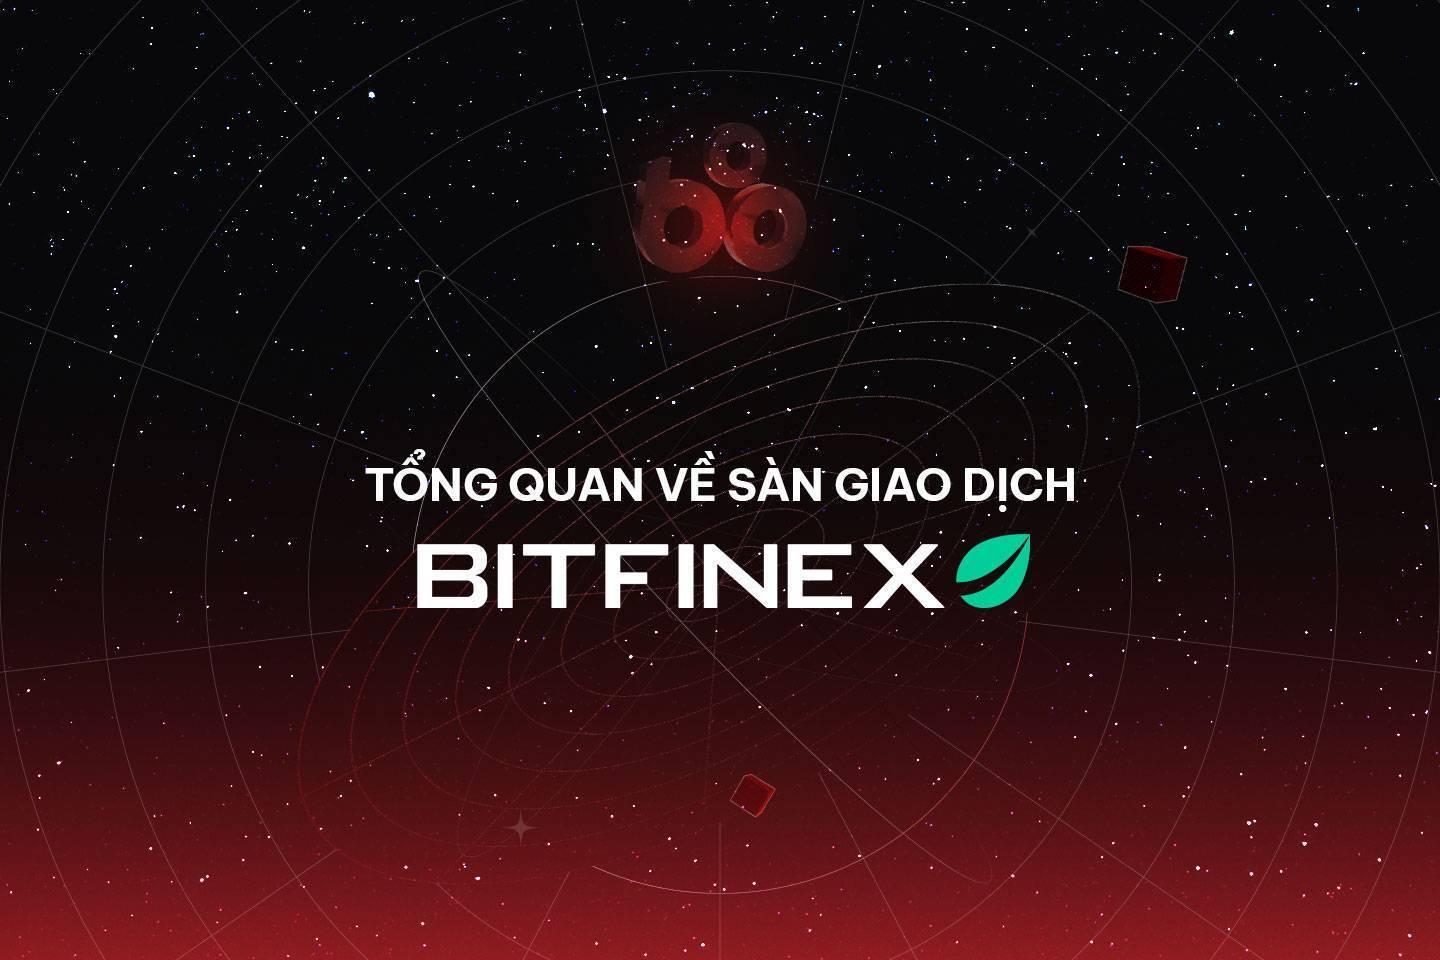 bitfinex-la-gi-tong-quan-ve-san-bitfinex-huong-dan-dang-ky-va-tao-vi-tren-san-giao-dich-bitfinex